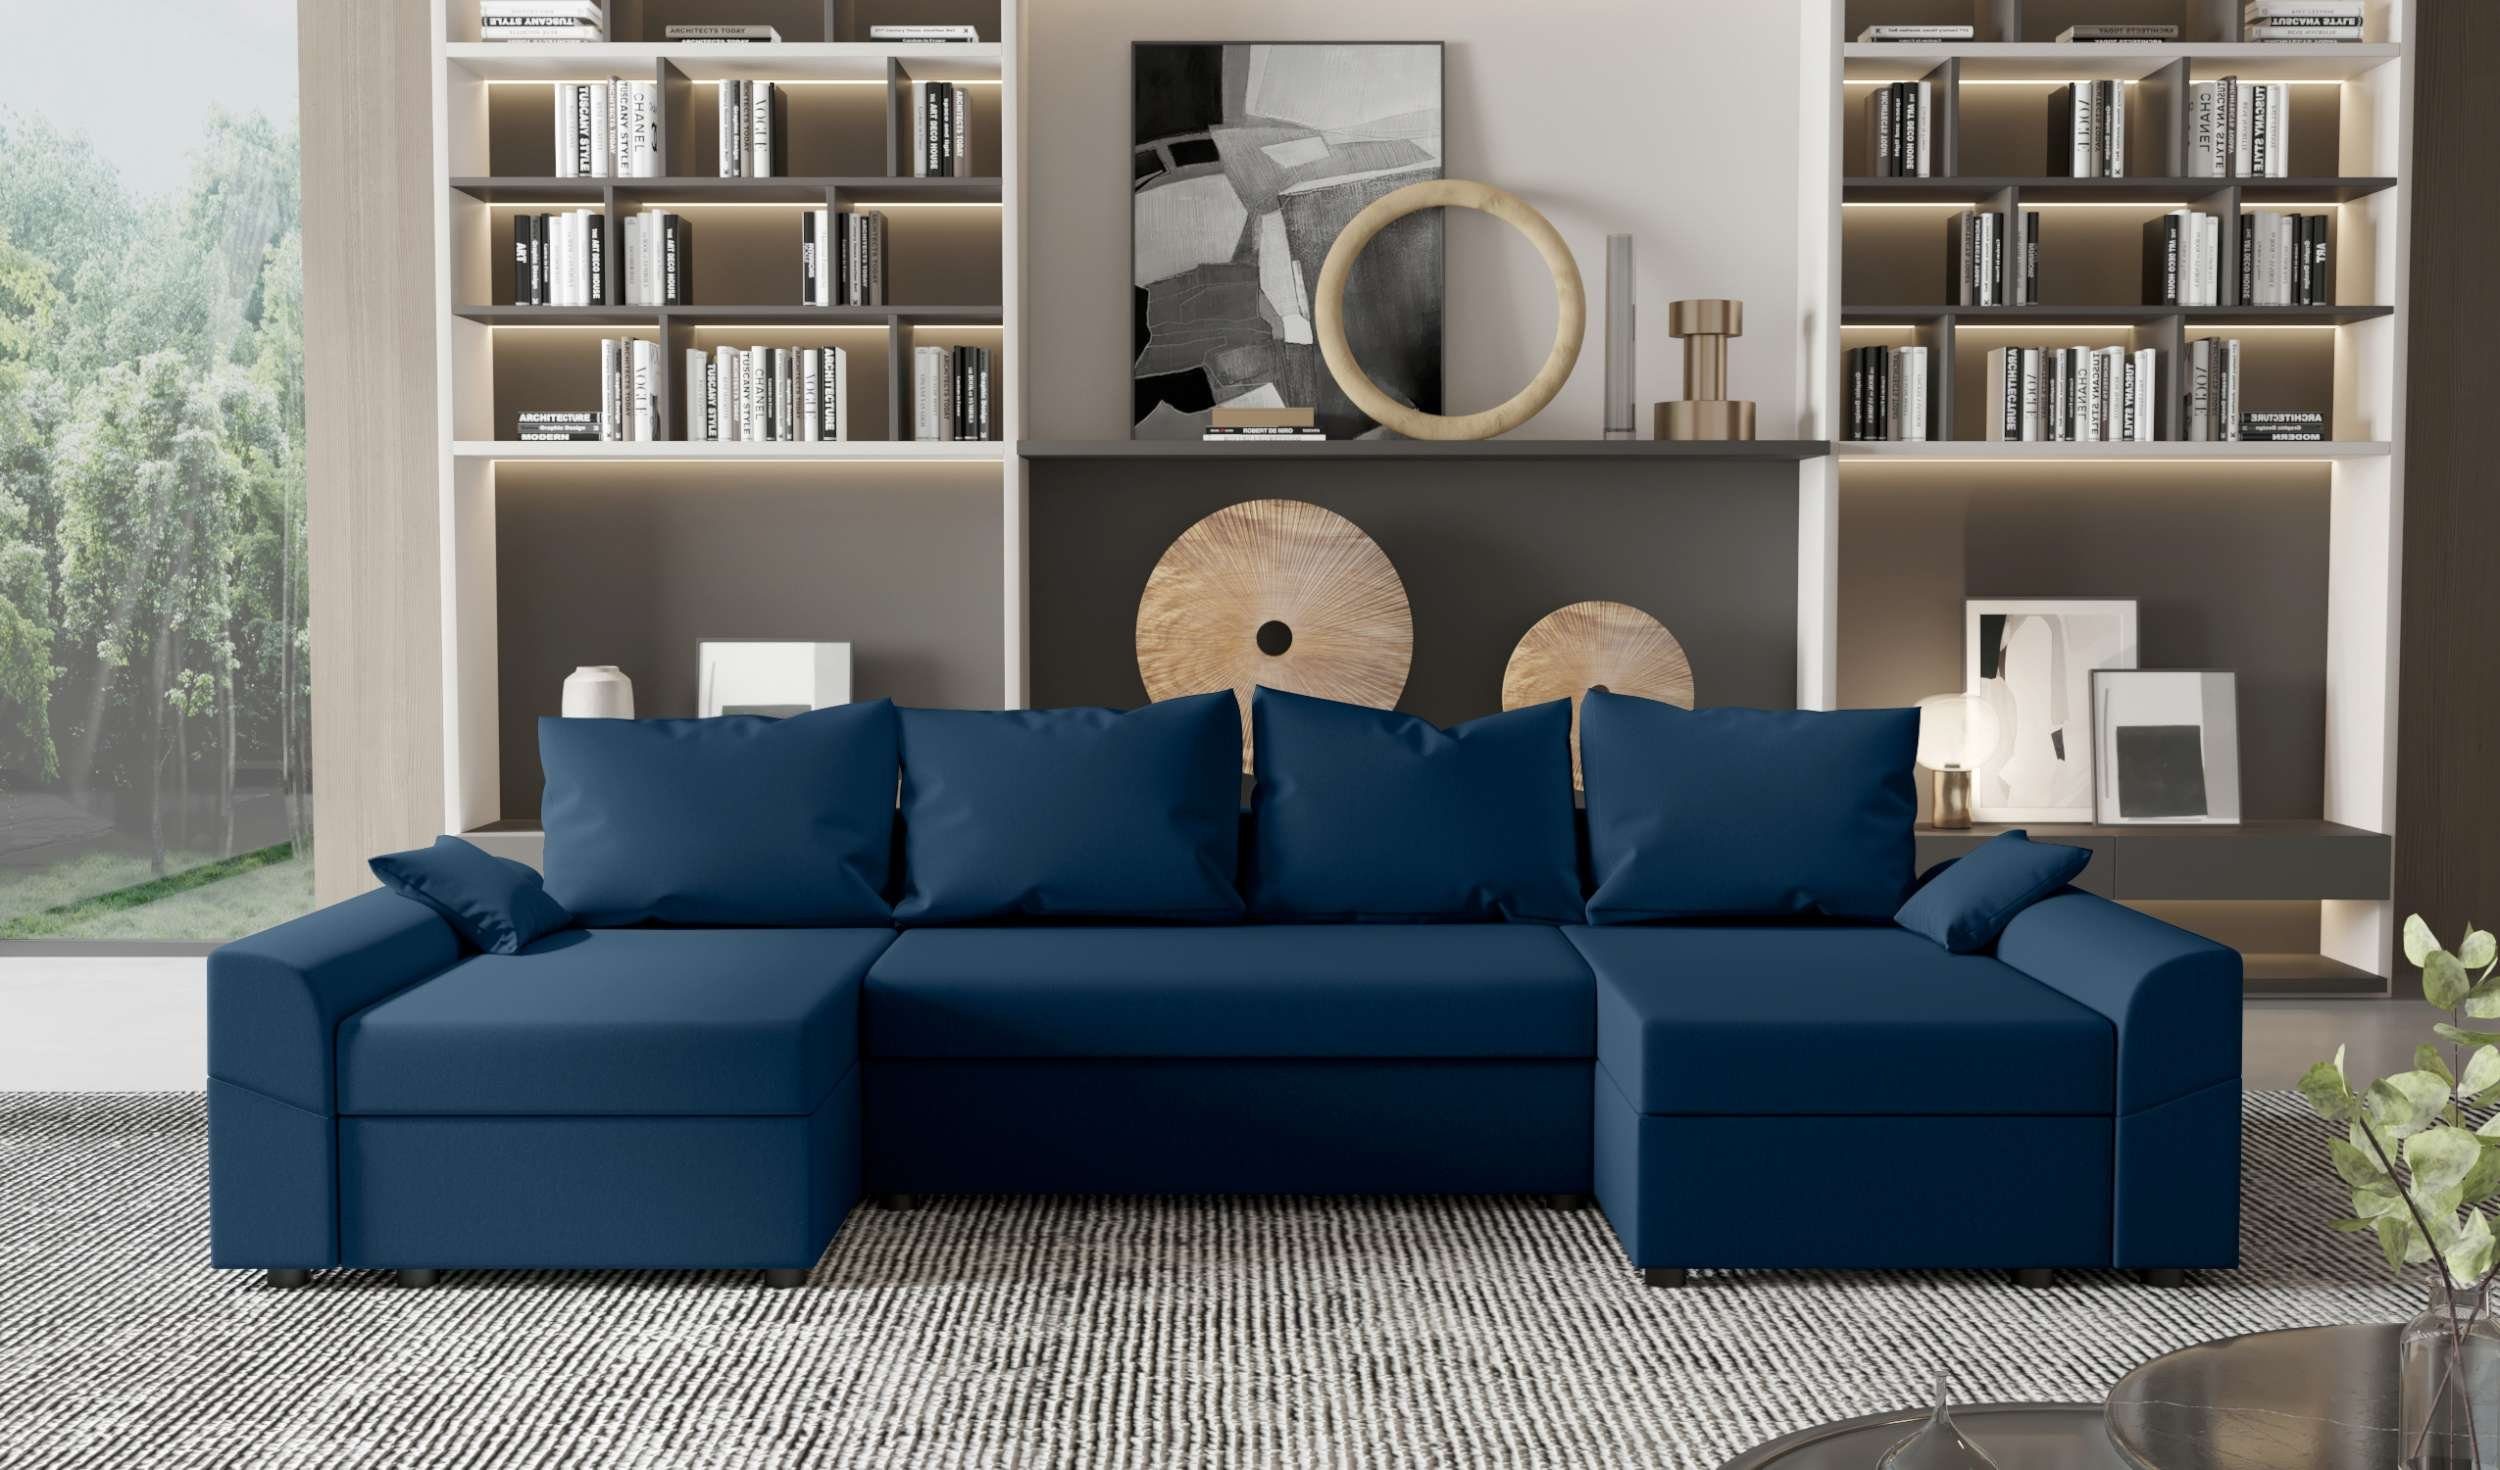 Stylefy Wohnlandschaft Carolina, U-Form, Eckcouch, Sitzkomfort, Design Sofa, mit Bettfunktion, mit Modern Bettkasten